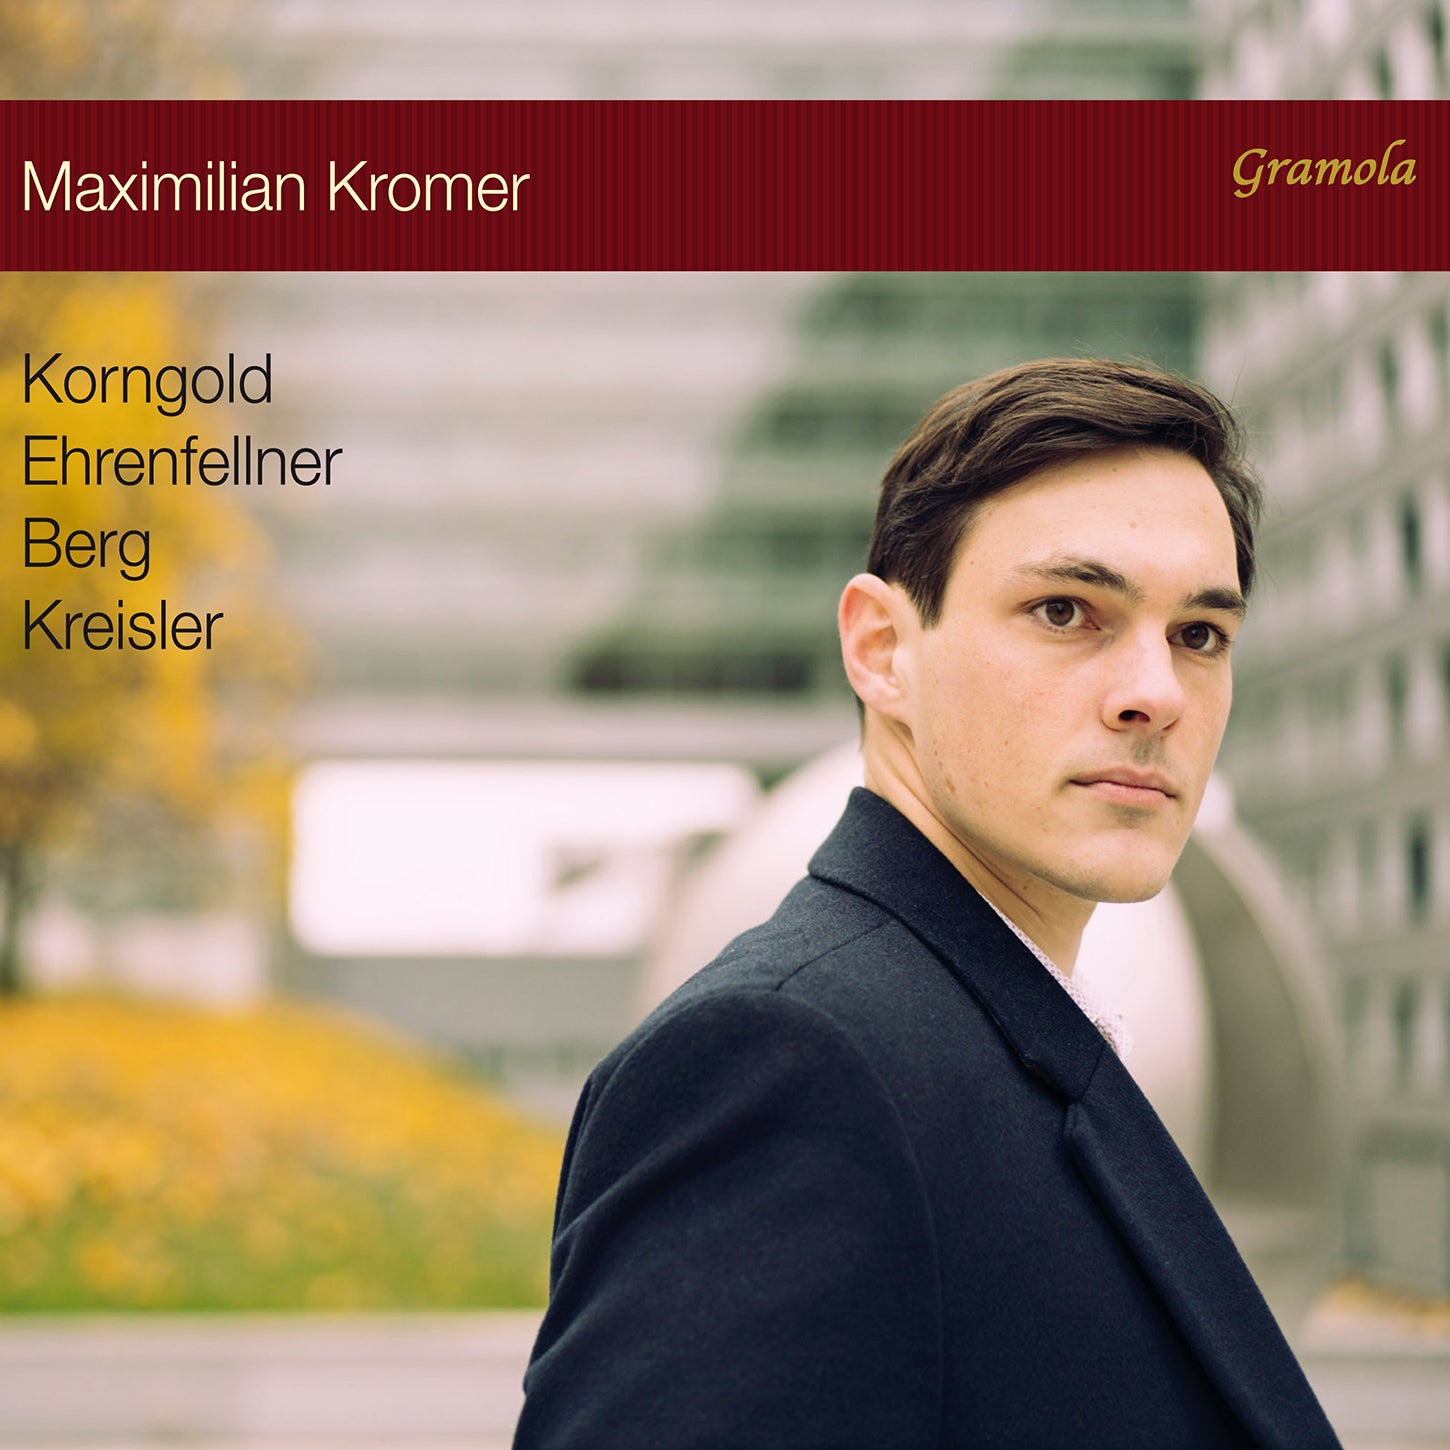 Berg, Ehrenfellner, Korngold & Kreisler: Piano Recital / Kromer